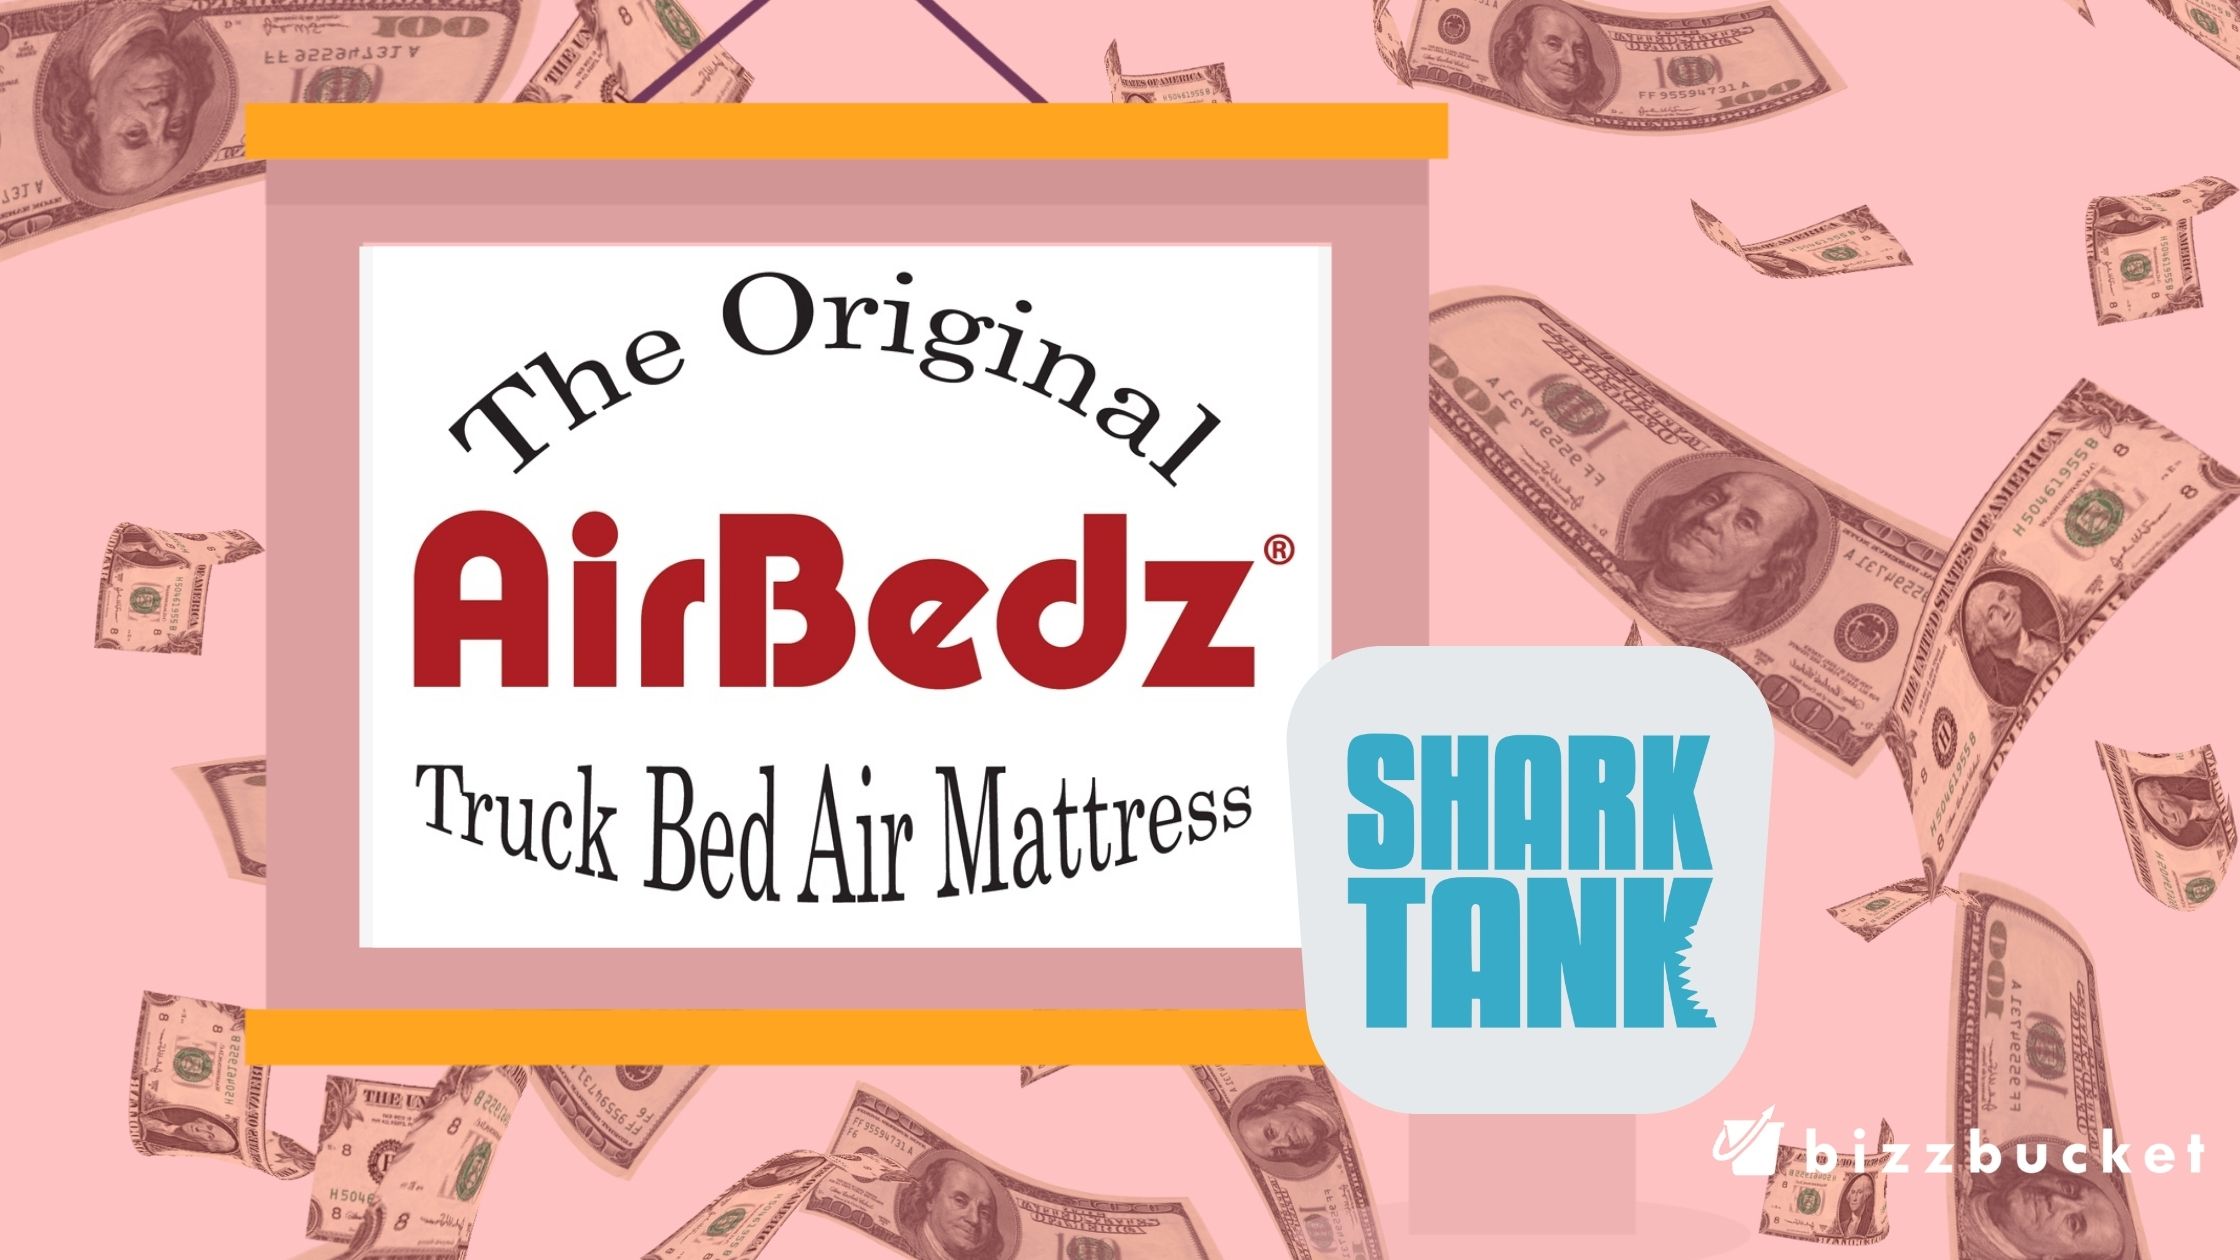 Airbedz shark tank update